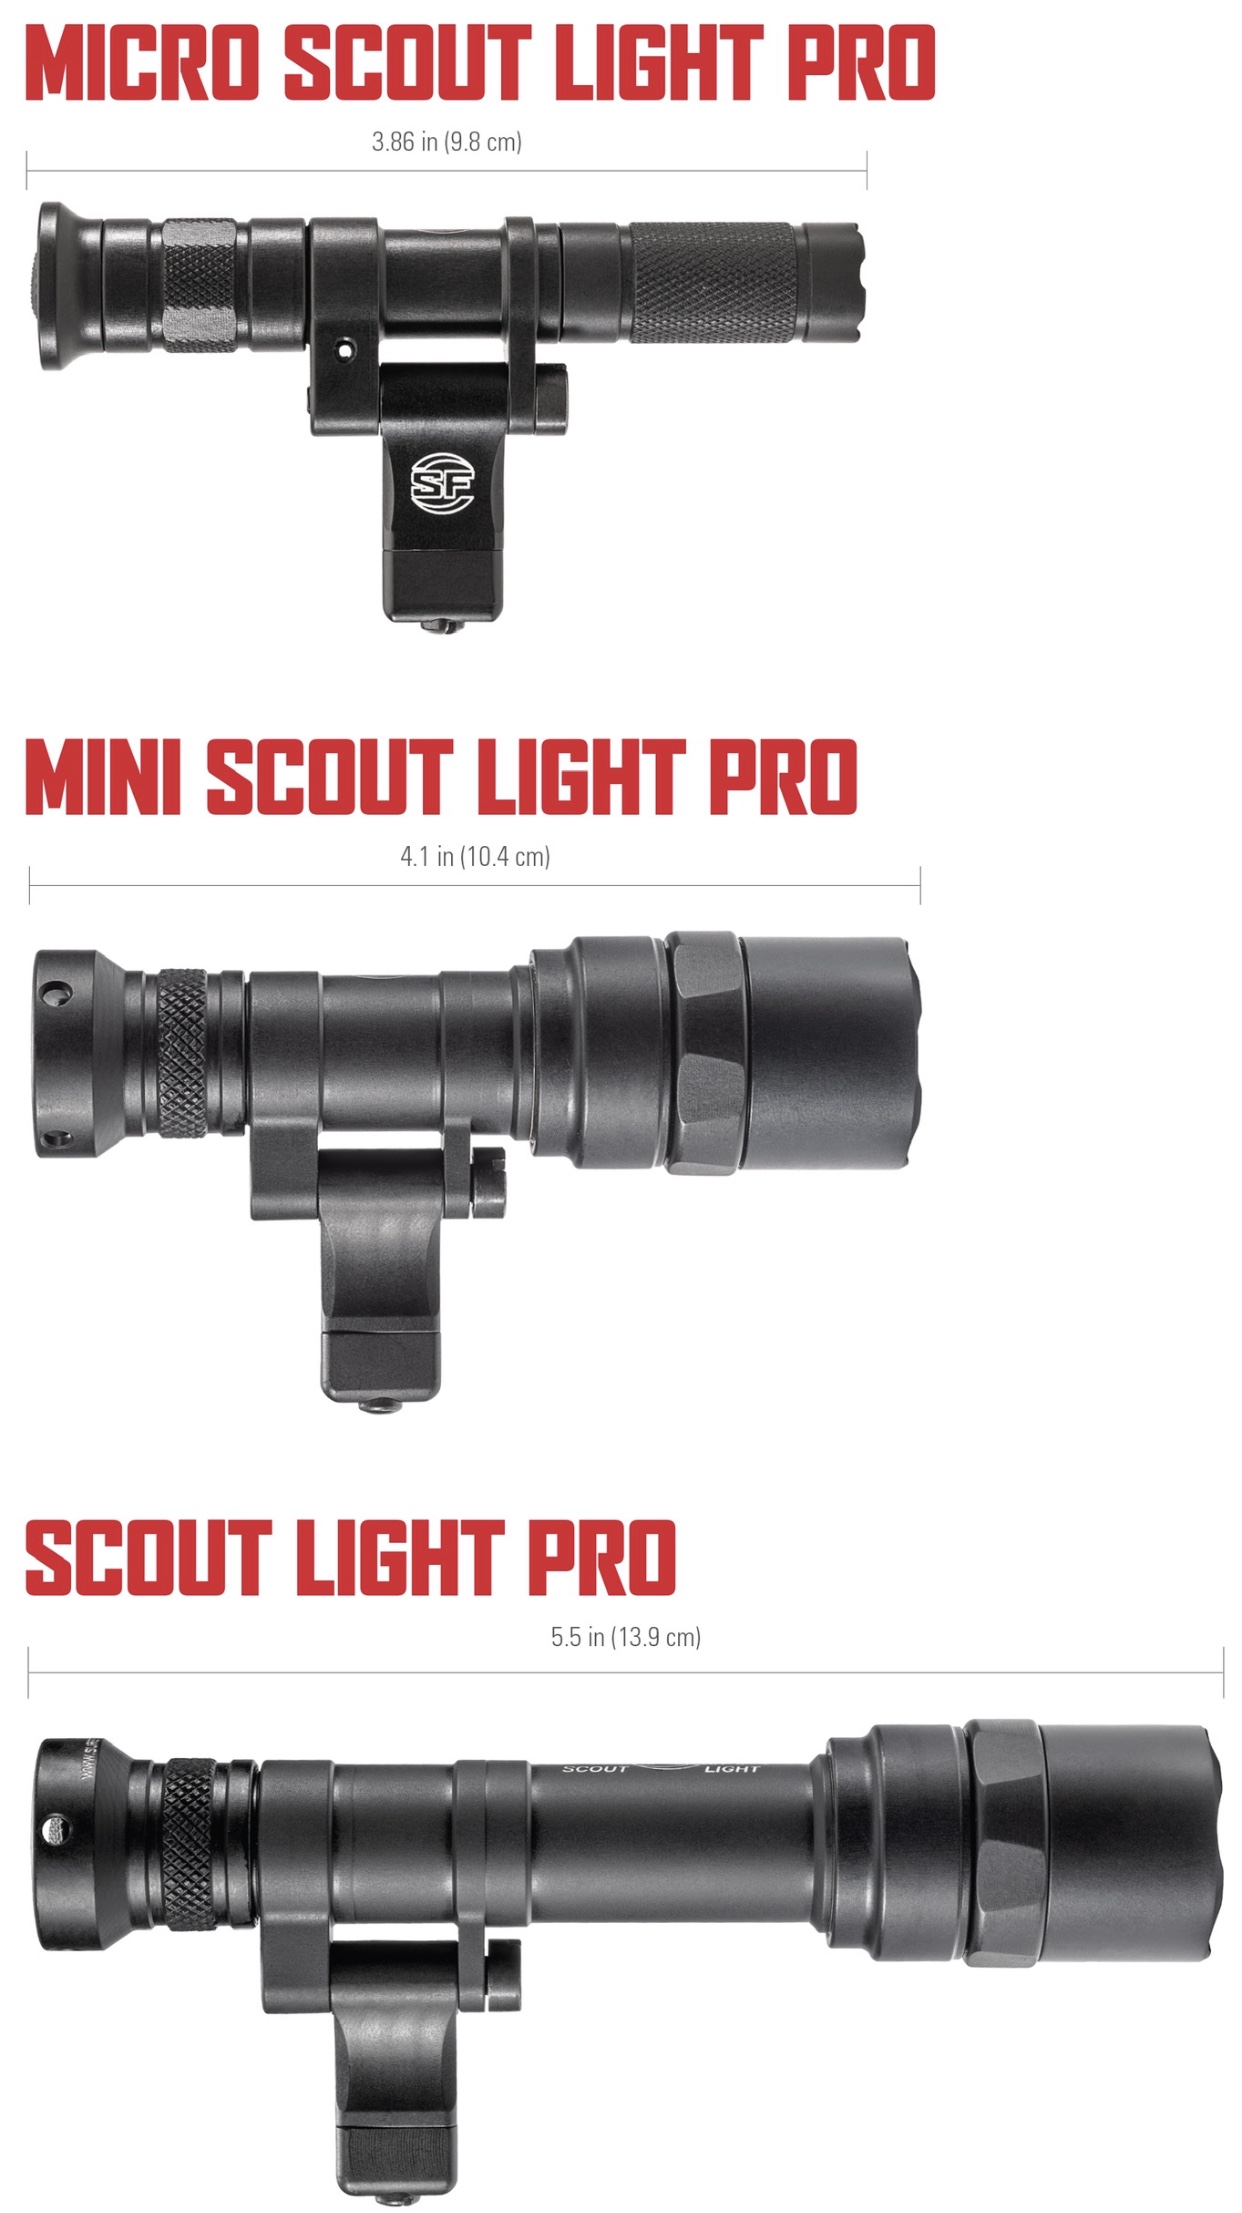 SureFire Mini Scout Light Pro